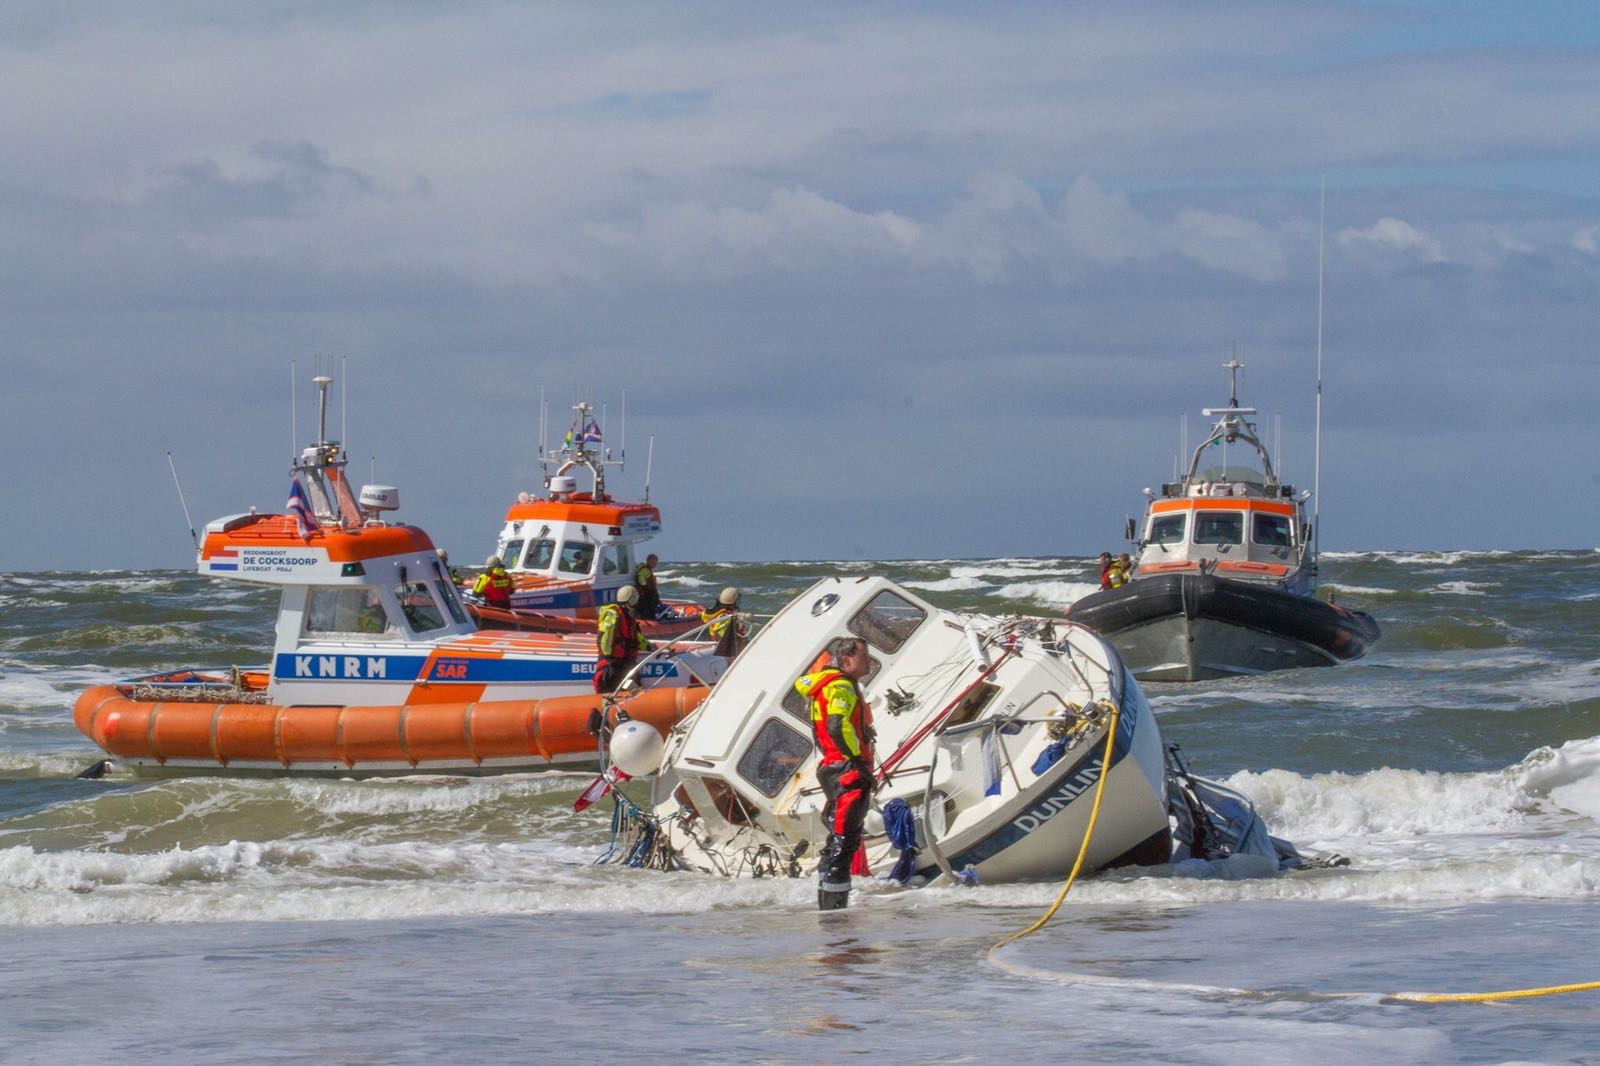 Duidelijk is te zien dat de reddingboten ok in zeer ondiep water zeer goed kunnen opereren.